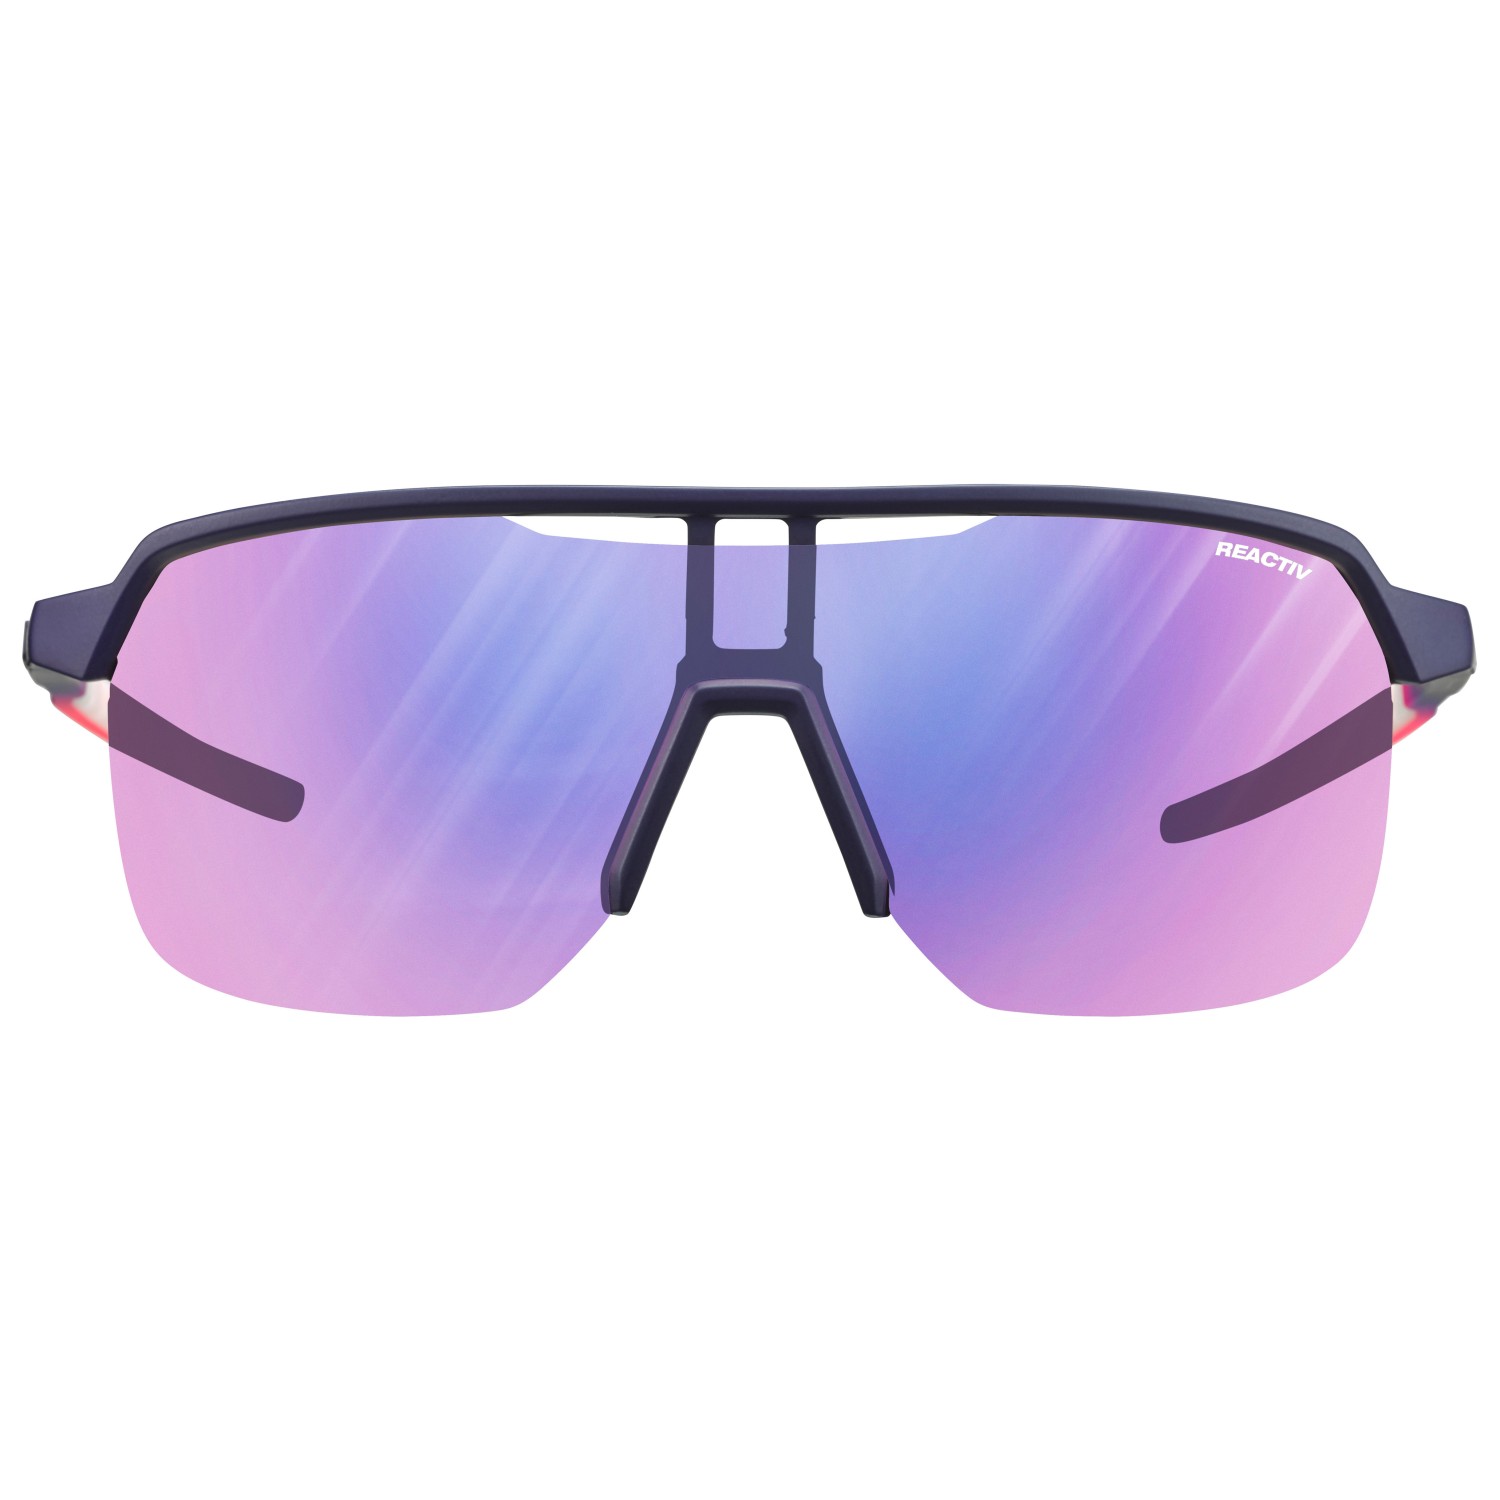 Велосипедные очки Julbo Frequency Reactiv S1 3 High Contrast (VLT 13 72%), цвет Violett/Rose цена и фото